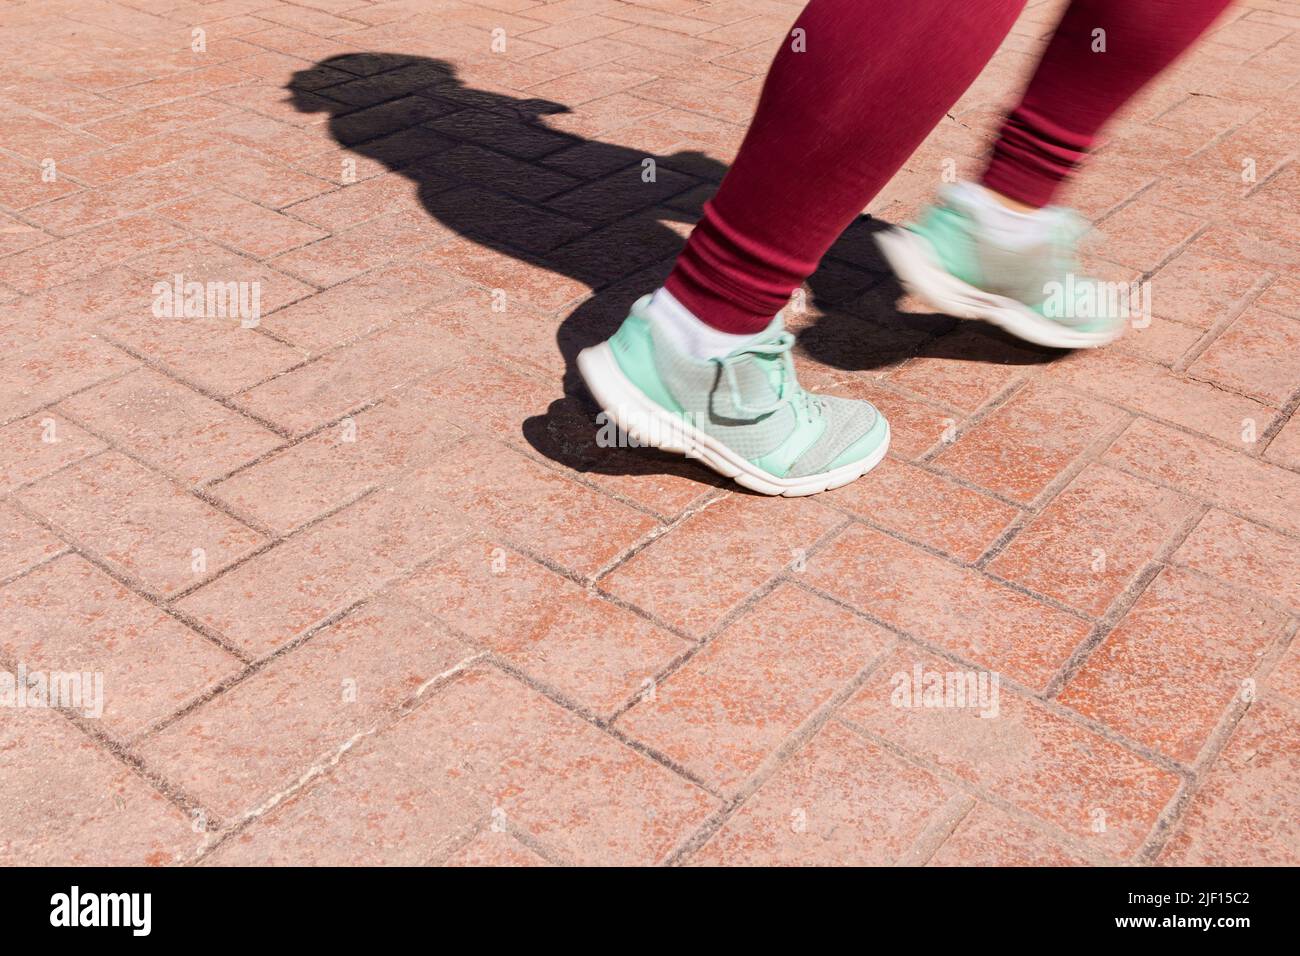 Su un pavimento in cemento stampato è possibile vedere i piedi di una persona irriconoscibile che sta correndo. Gli arti sono offuscati dal movimento. Foto Stock